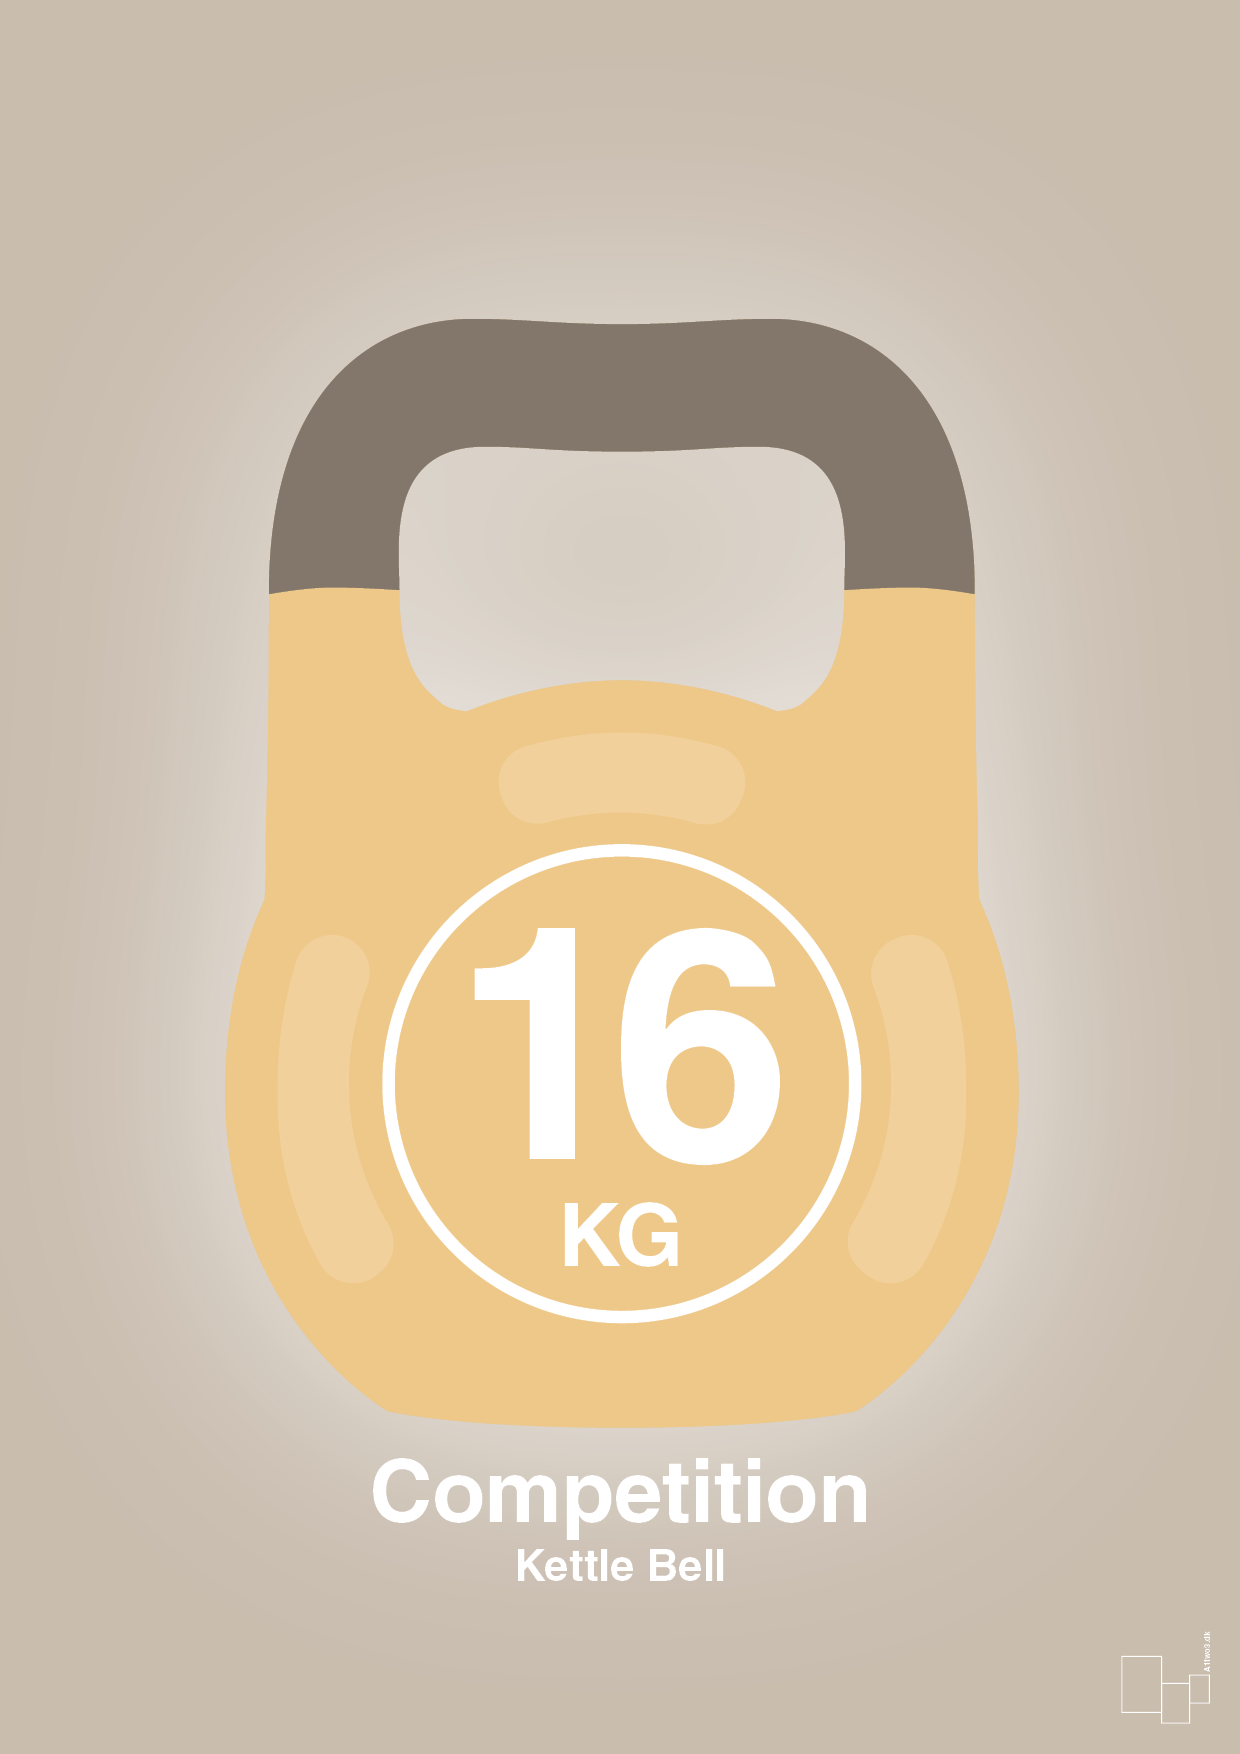 kettle bell 16 kg - competition color - Plakat med Grafik i Creamy Mushroom